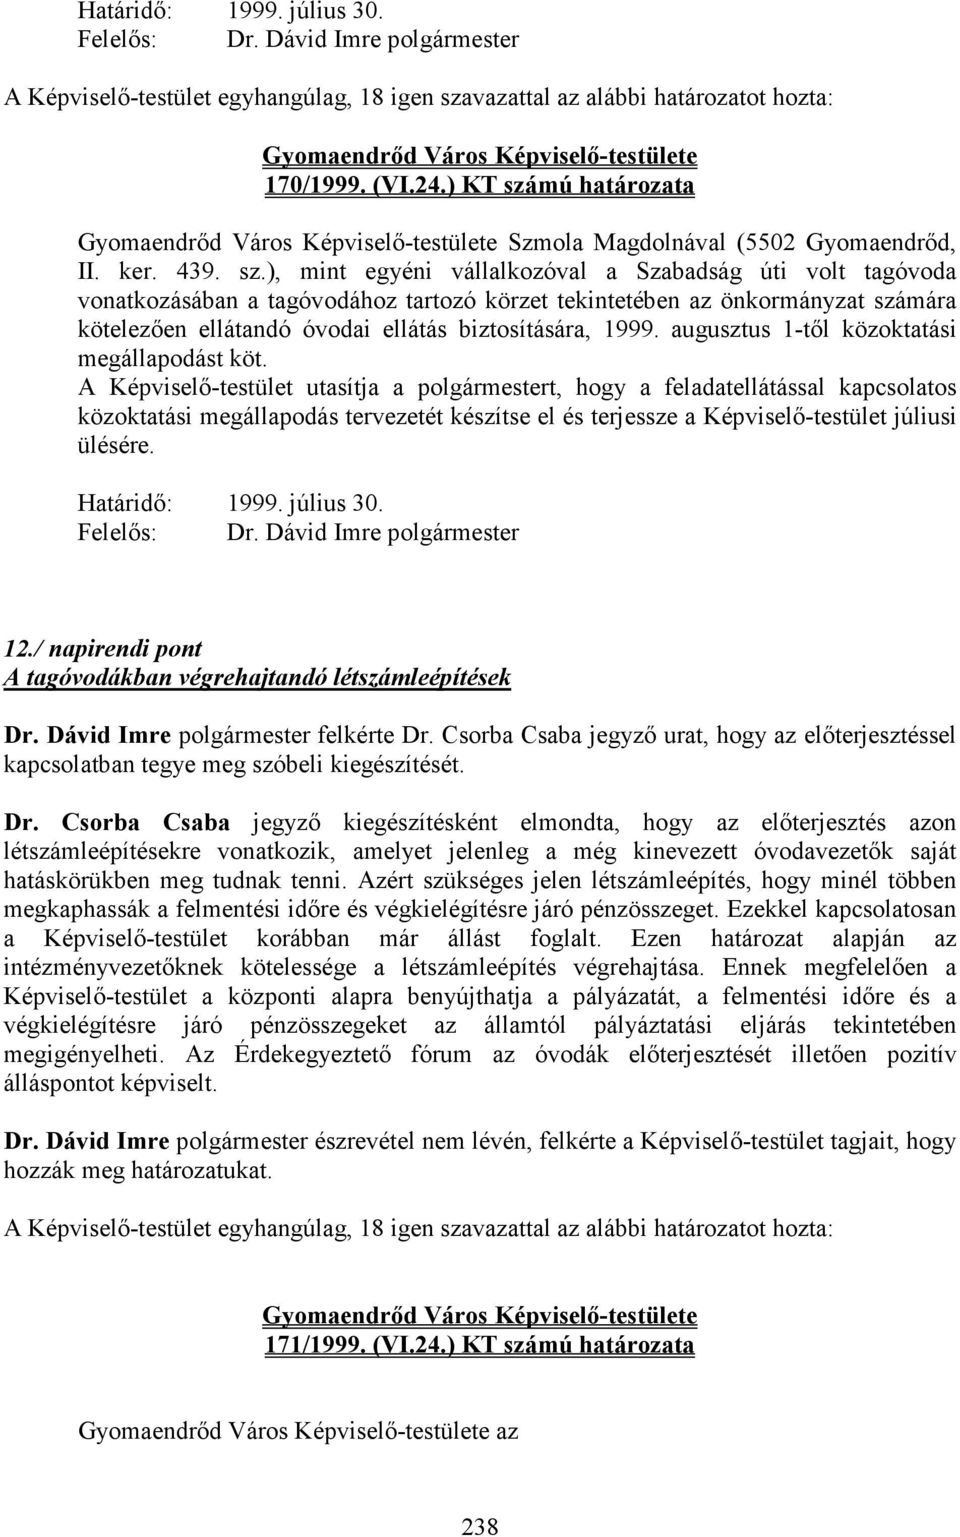 mú határozata Szmola Magdolnával (5502 Gyomaendrıd, II. ker. 439. sz.